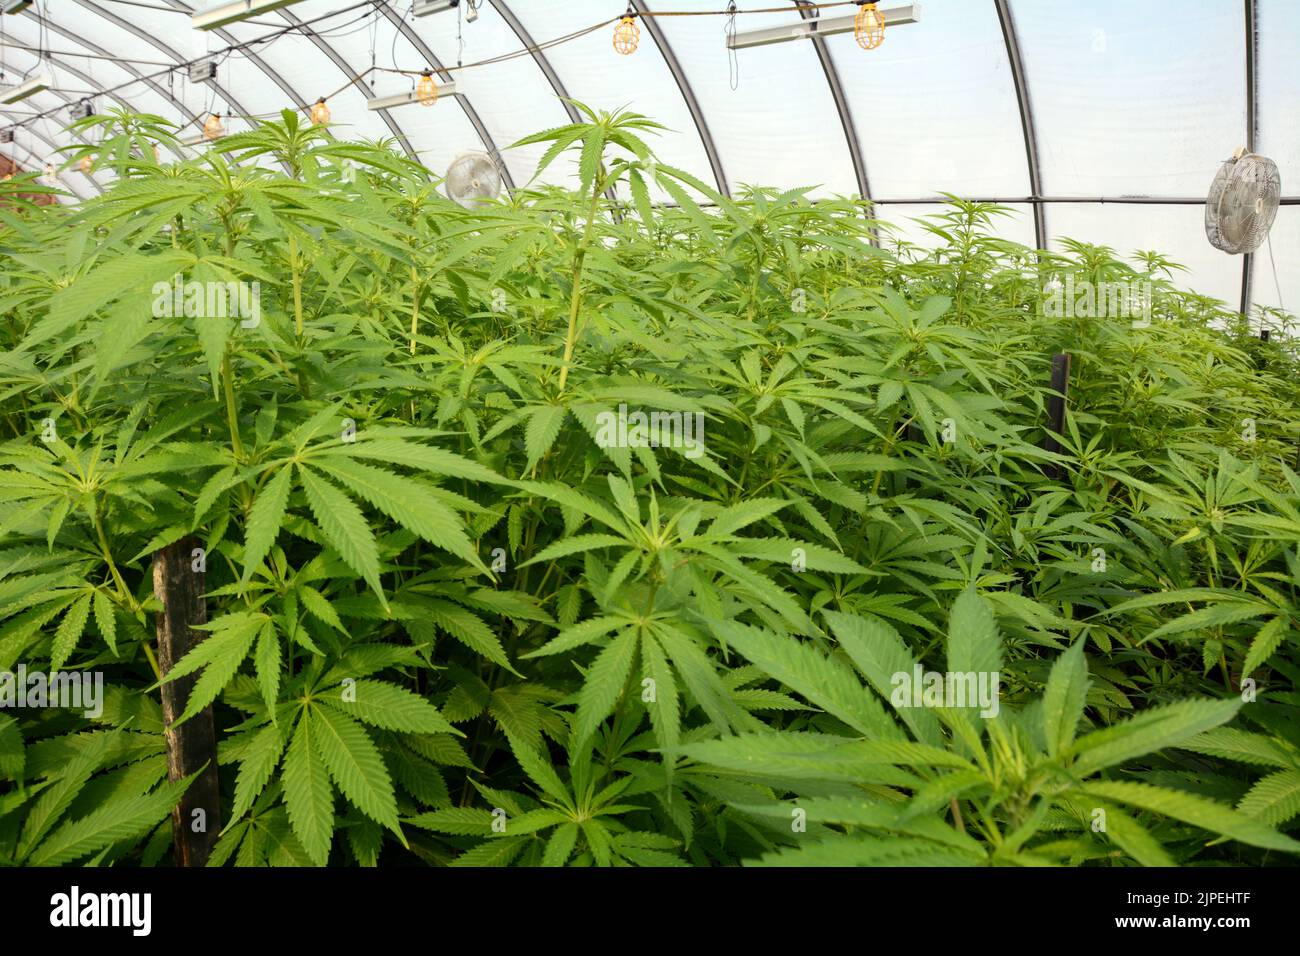 Plantas recreativas legales de marihuana o cannabis que se cultivan en un invernadero en una granja sostenible cerca de la ciudad de Creemore, Ontario, Canadá. Foto de stock